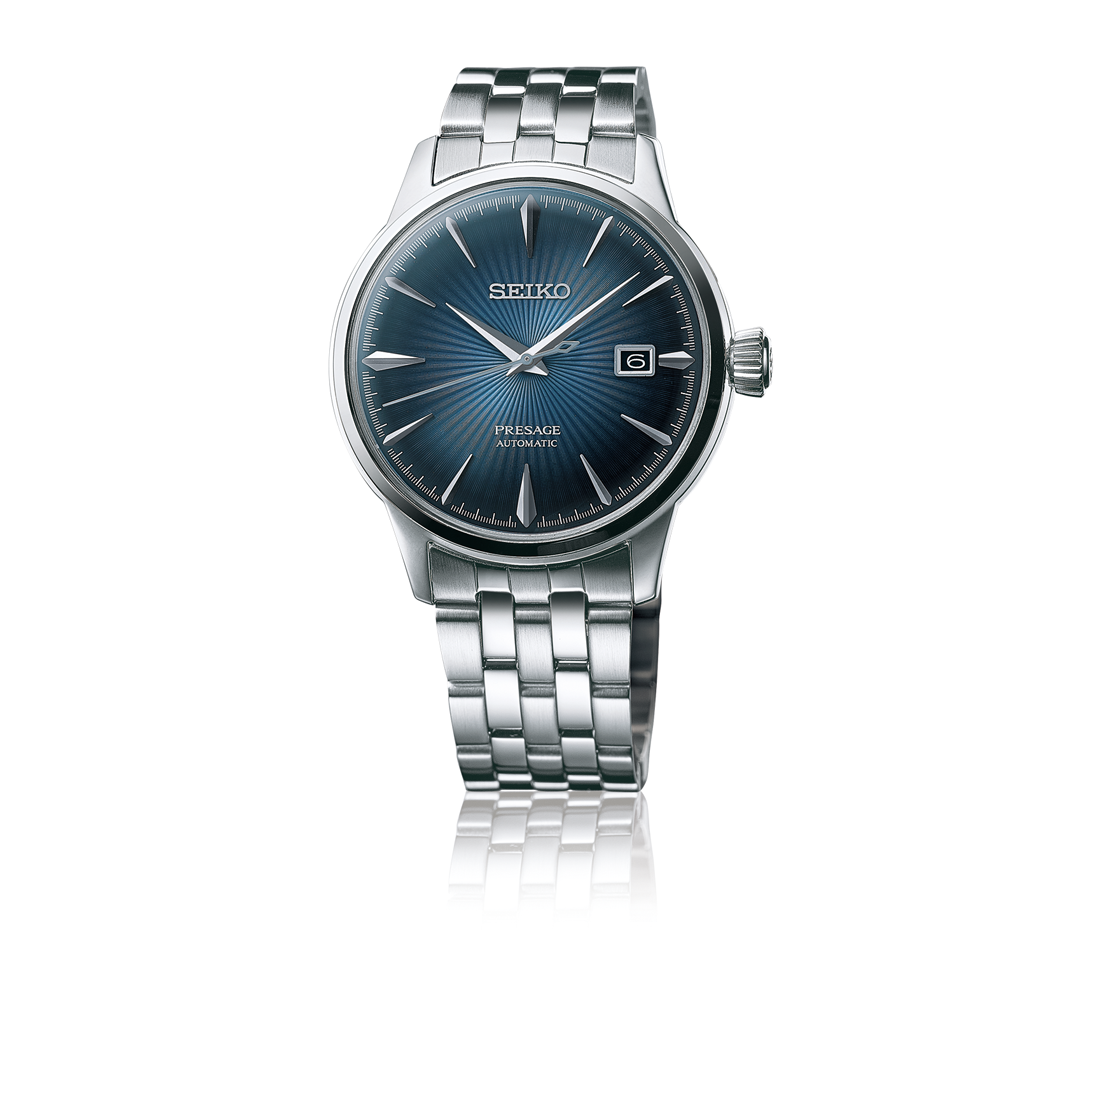 23988円 新作人気 セイコーウォッチ 腕時計 プレザージュ ブルーグラデーション文字盤 ボックス型ハードレックス シースルーバック SARY123 メンズ シルバー